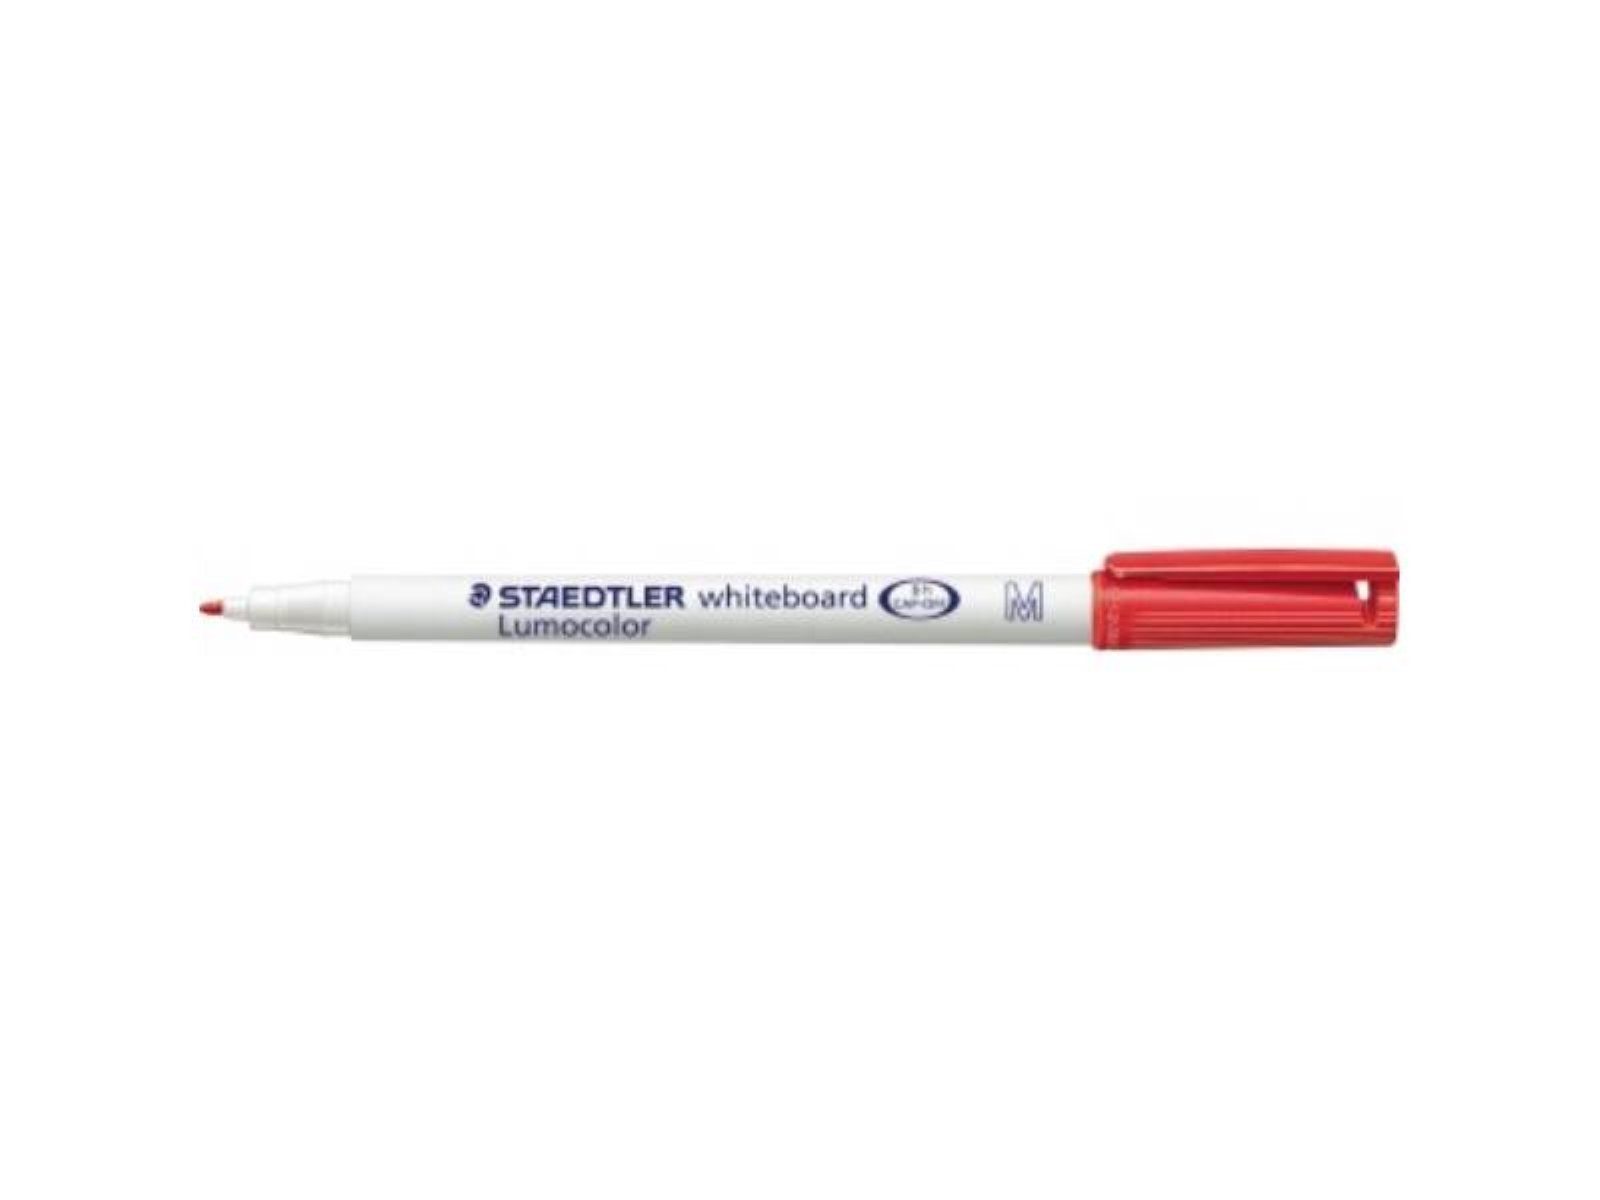 STAEDTLER Marker STAEDTLER 301-2 STAEDTLER® Whiteboardmarker Lumocolor® 301 1mm rot